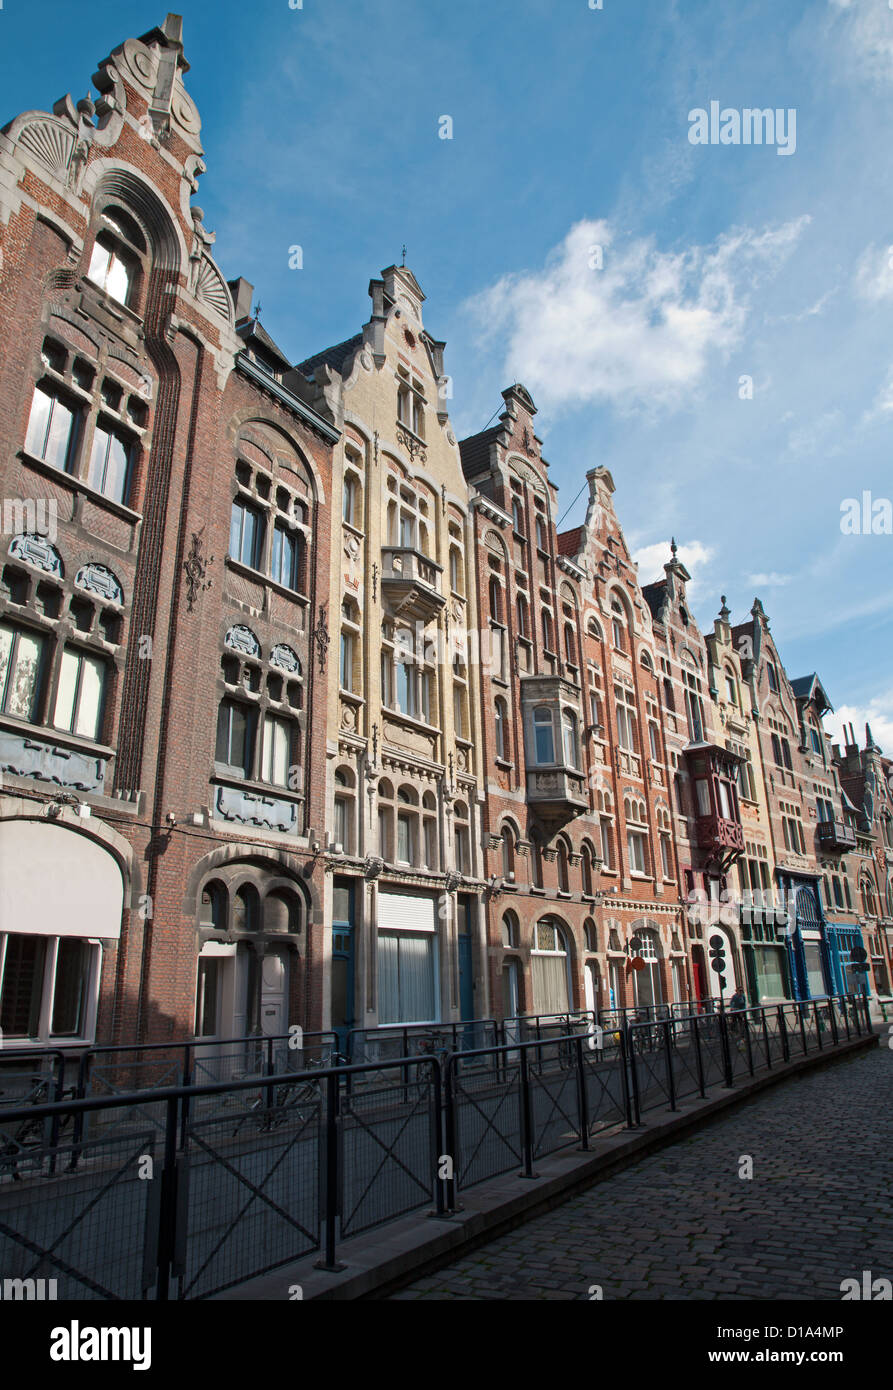 Bruselas - La fachada de las casas típicas Foto de stock